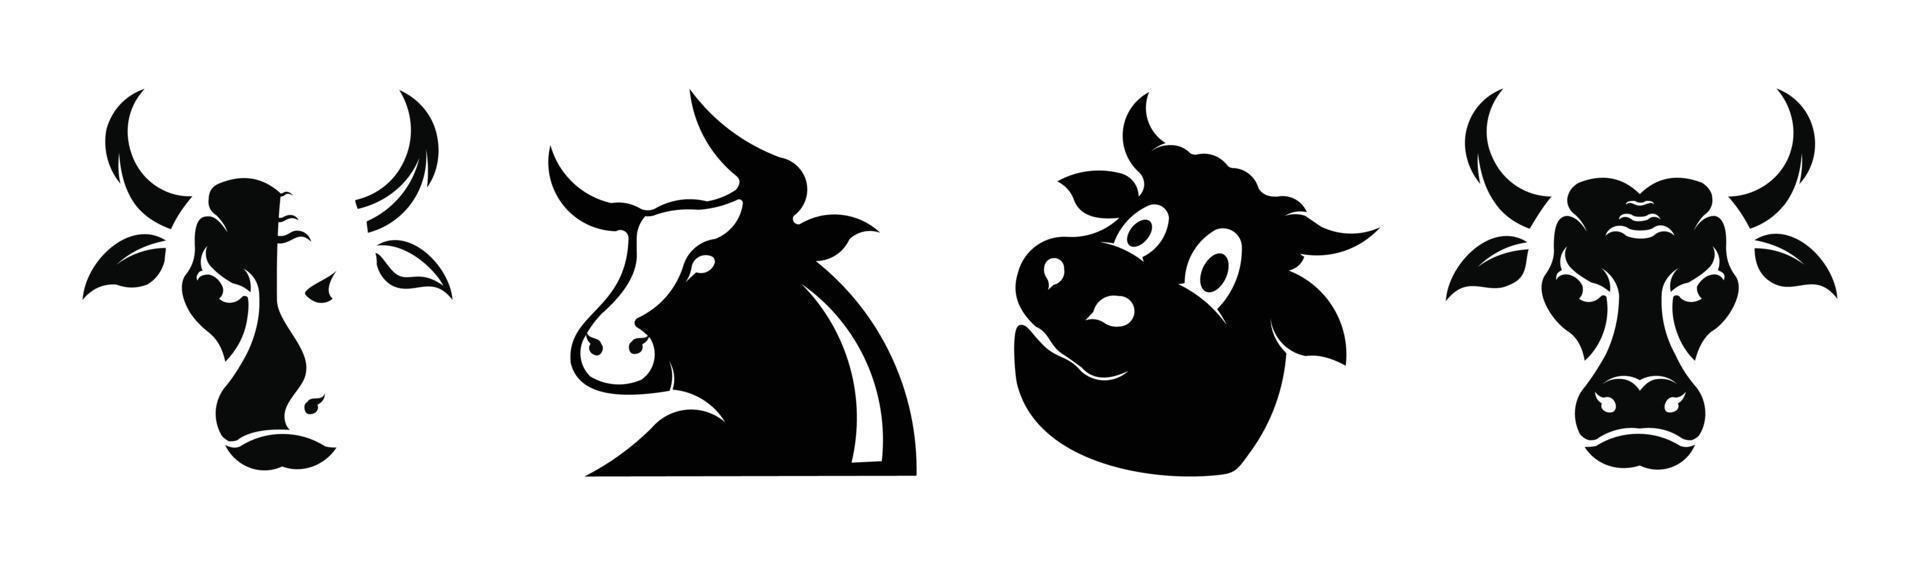 koe ingesteld zwart silhouet op een witte achtergrond. stier en koe silhouet set vector dieren pictogrammen